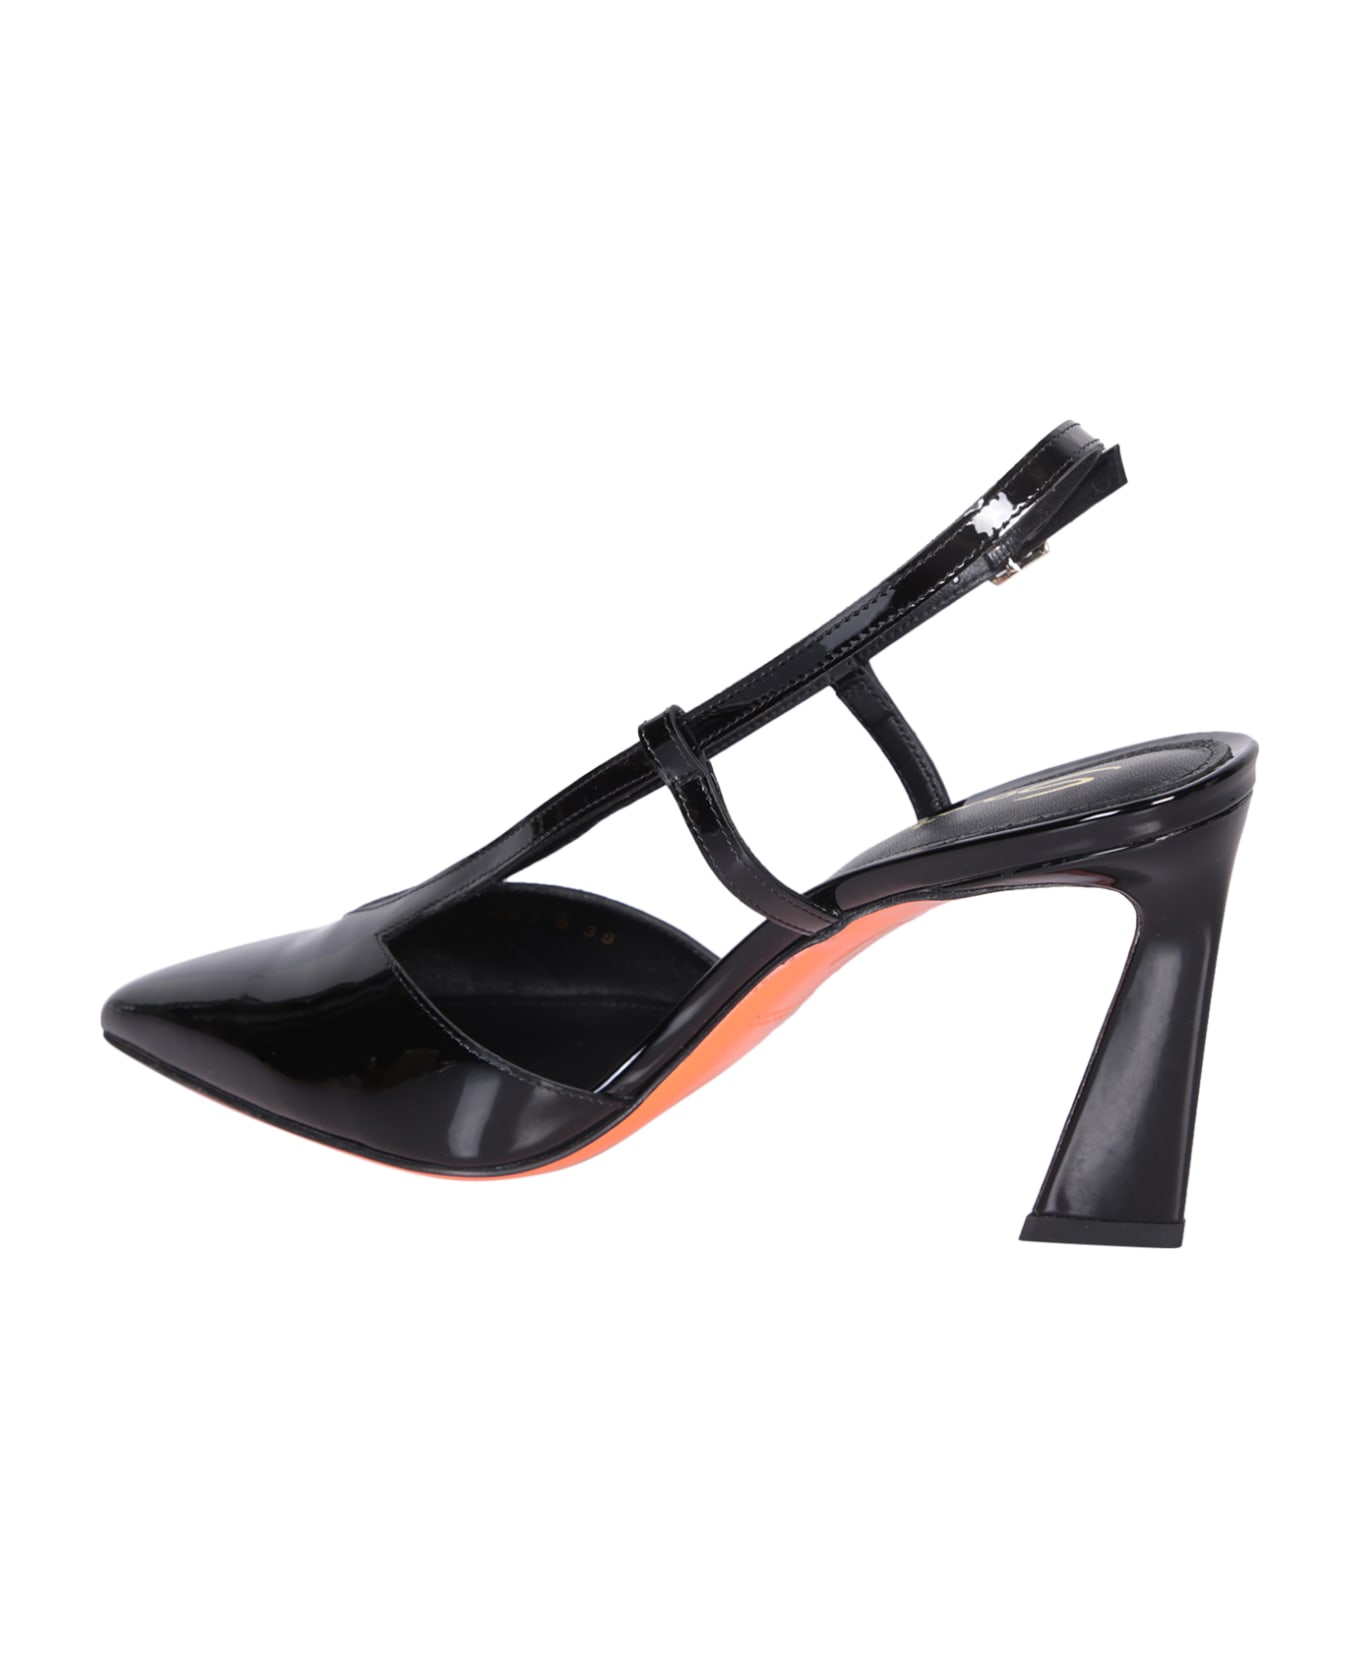 Santoni Black Patent Leather Slingback Heels - Black